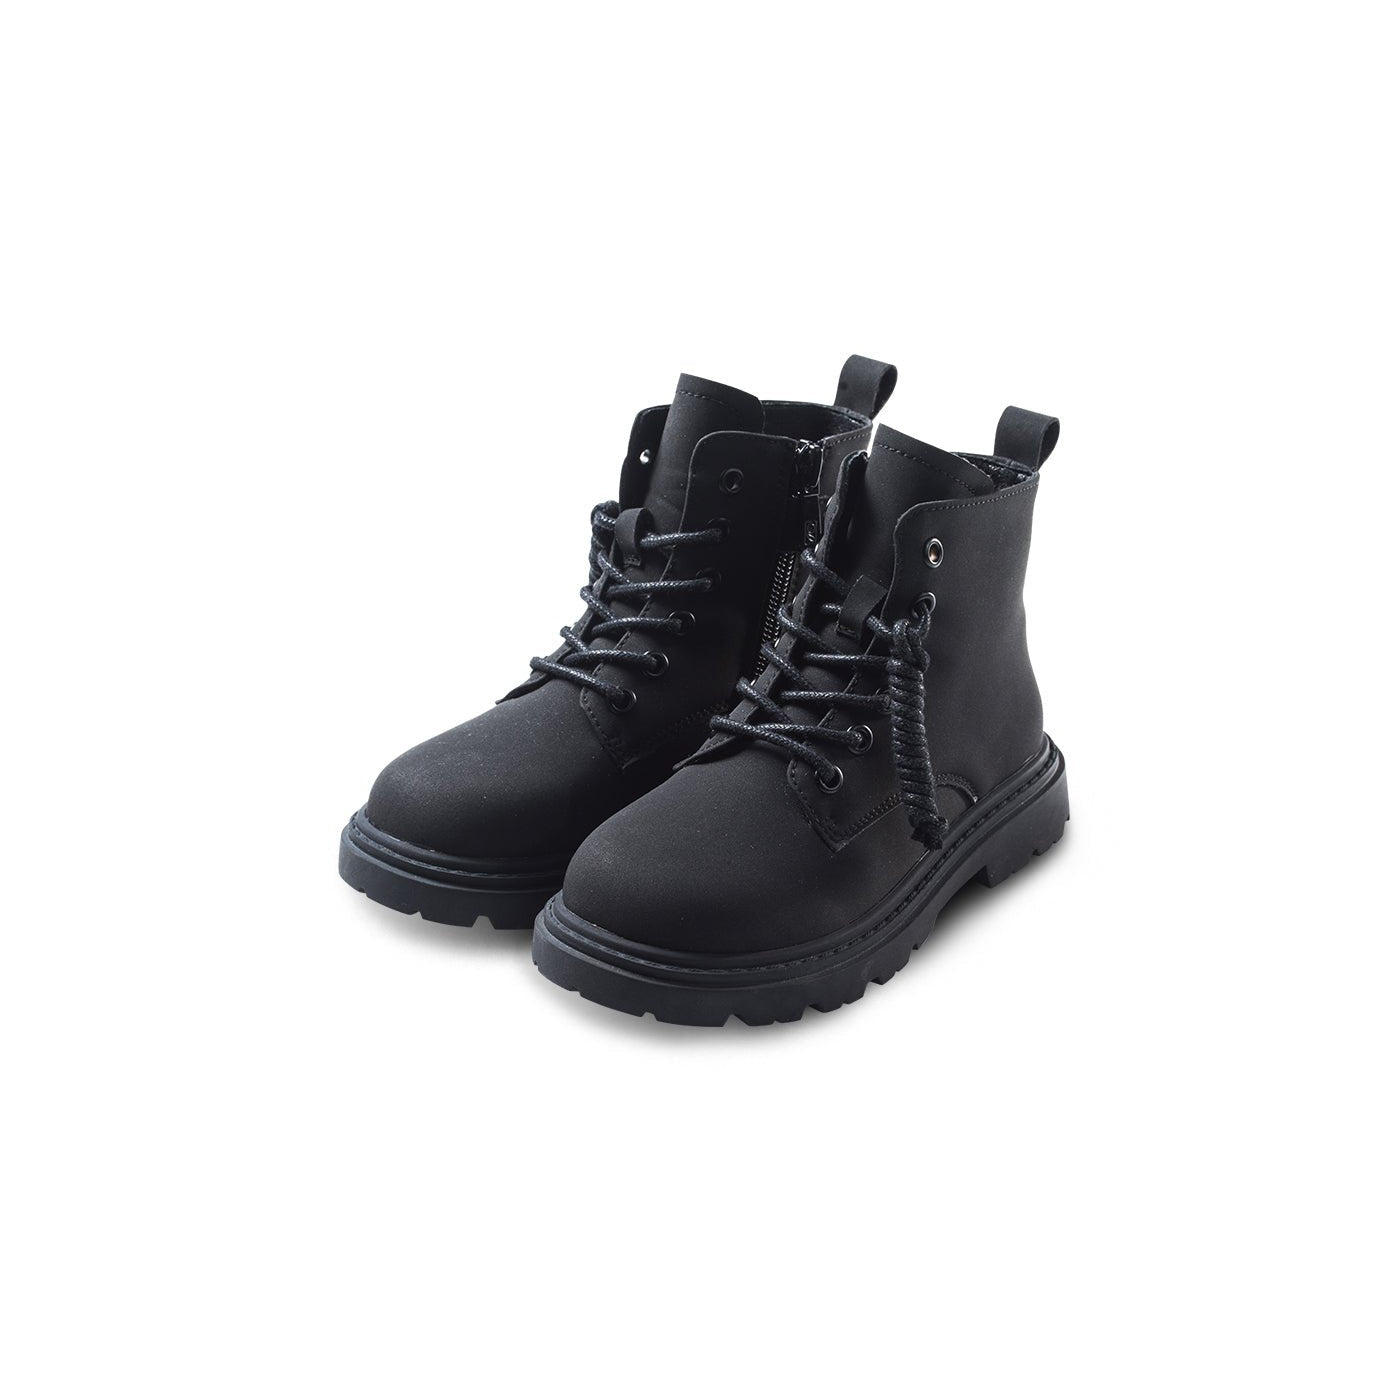 Pigtail Classic Kids Black Combat Boots - 0cm